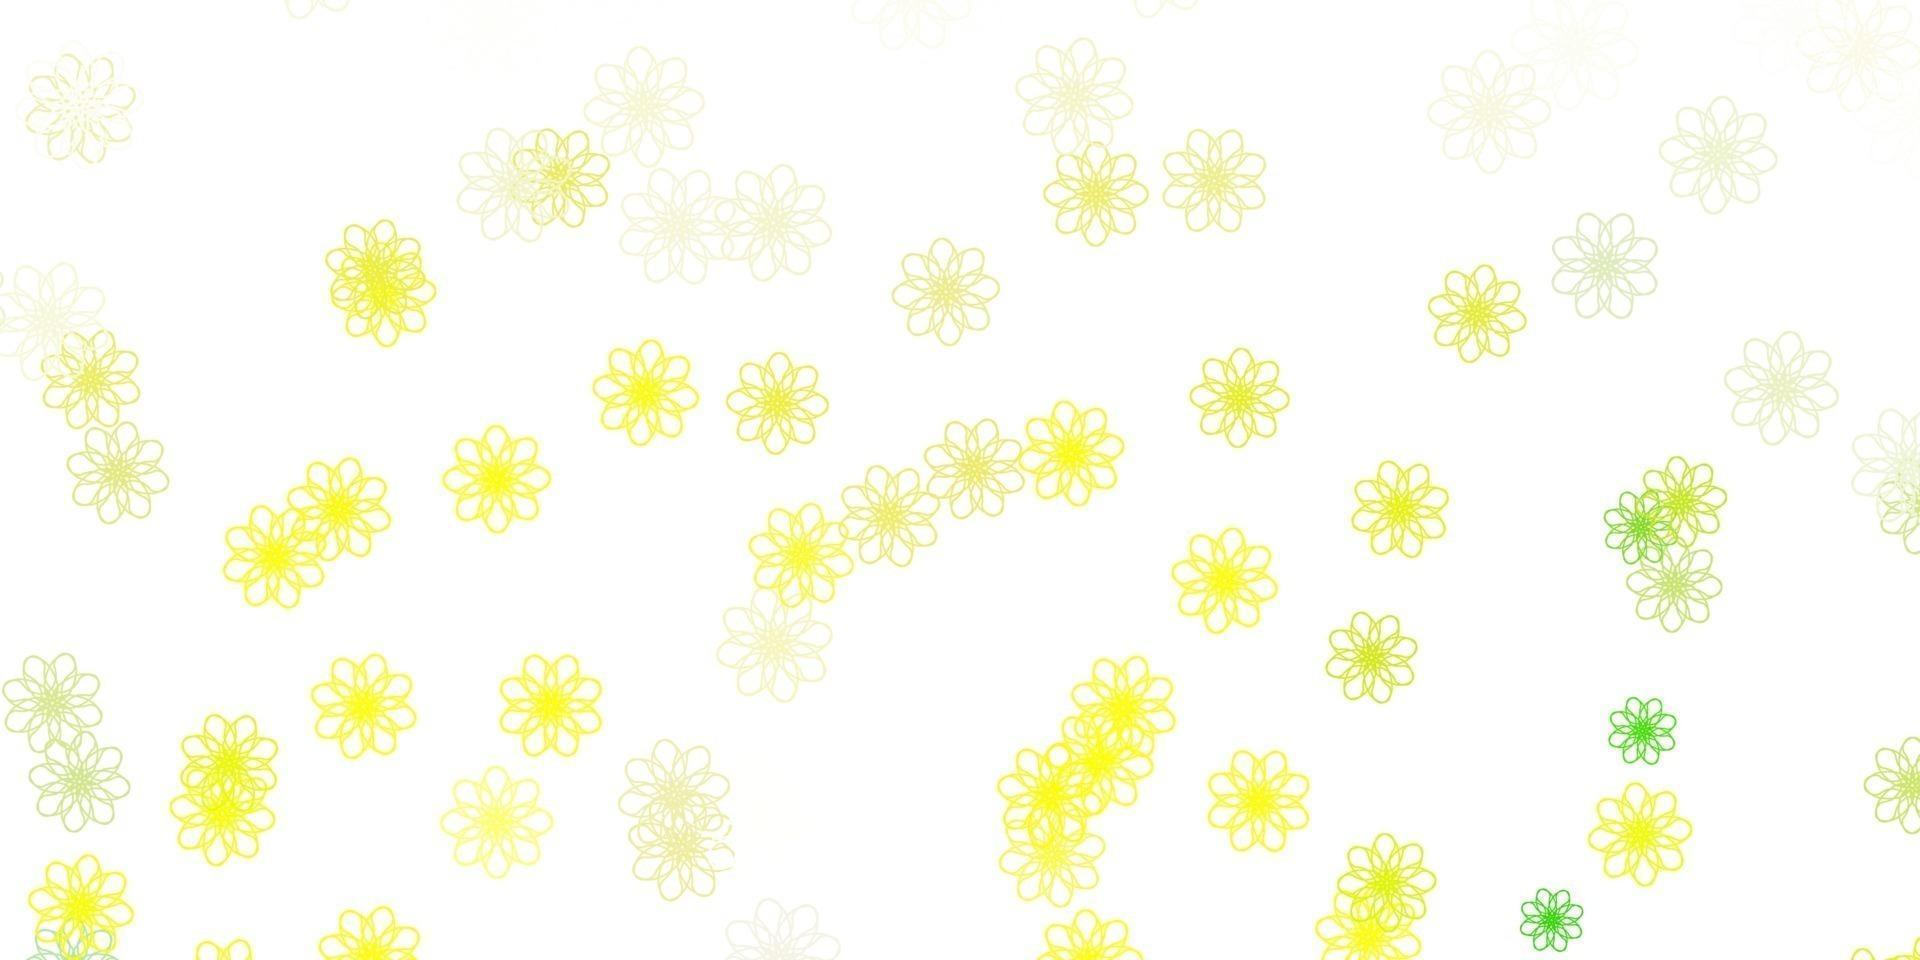 lichtgroen, geel vector doodle sjabloon met bloemen.